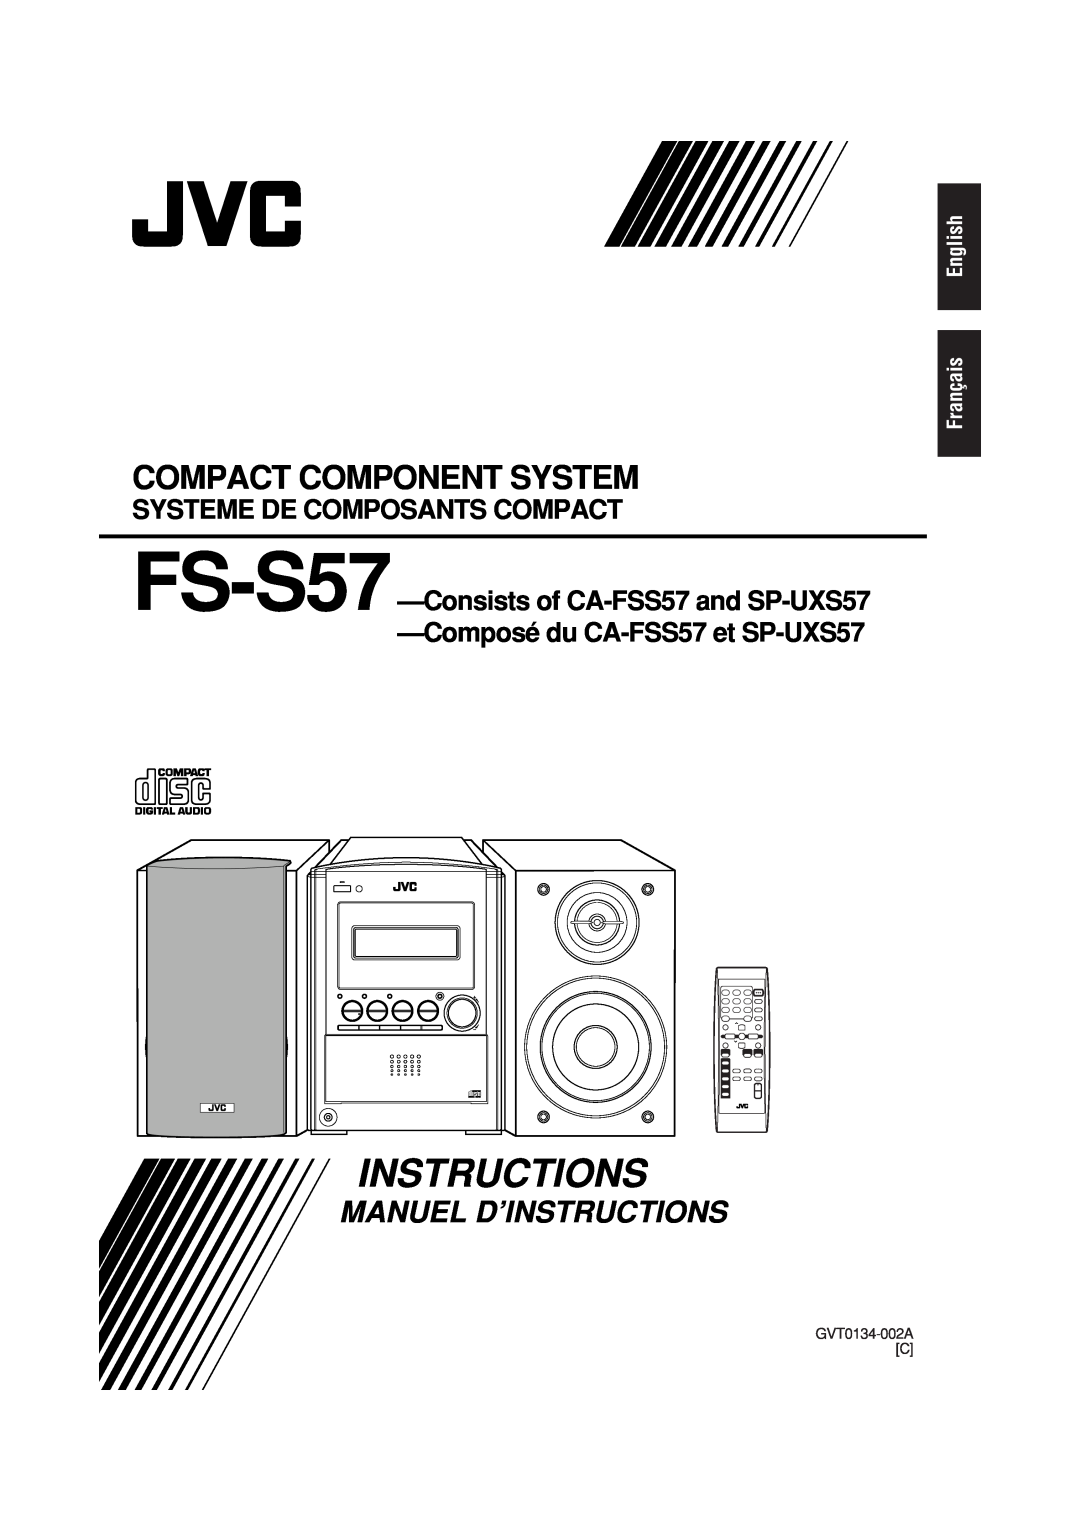 JVC CA-FSS57 Systeme De Composants Compact, English Français, Instructions, Compact Component System, GVT0134-002AC, 5-CD 